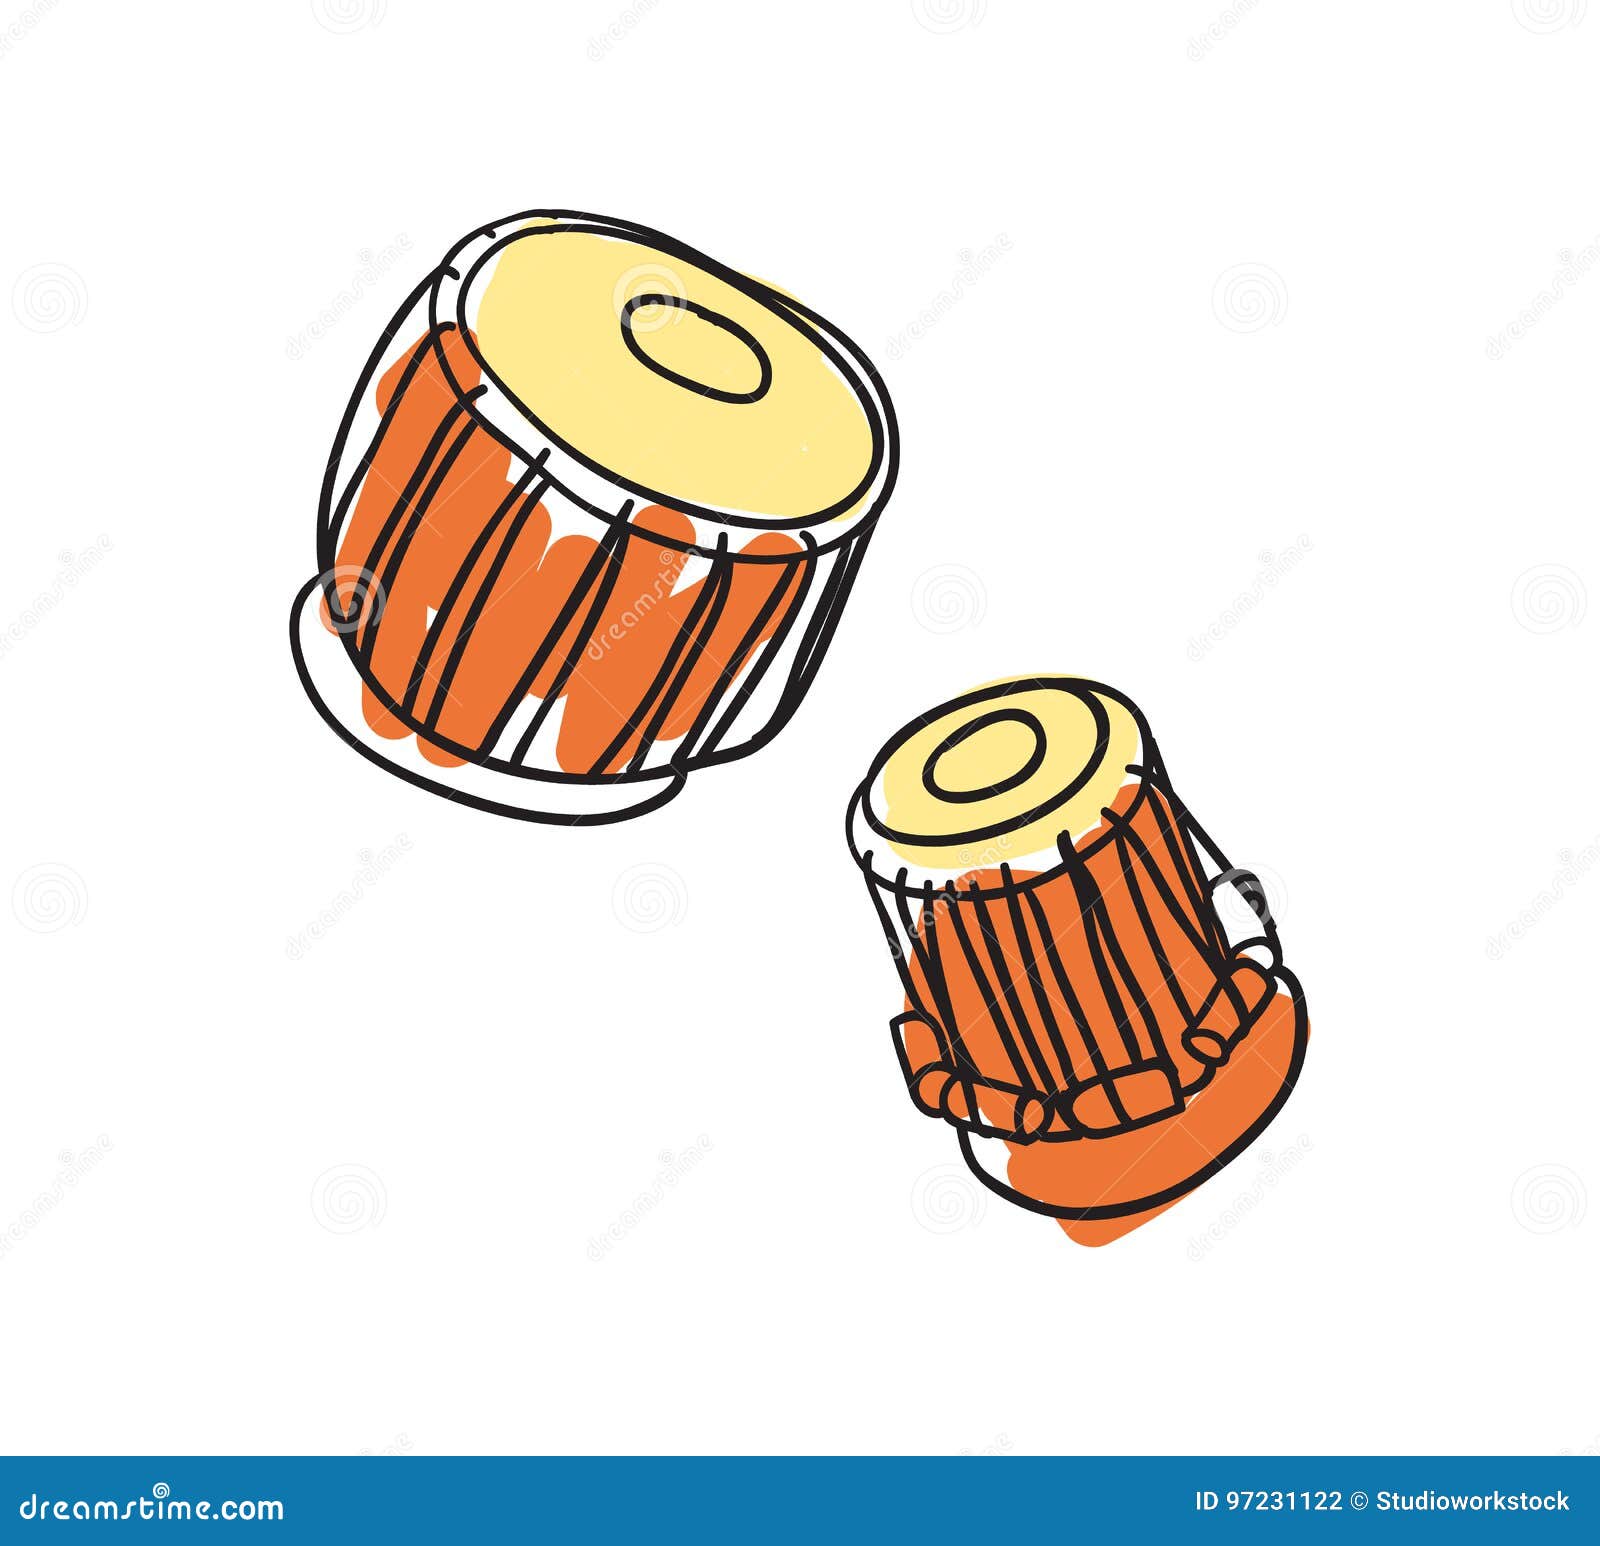 Vecteur Stock Drum tam-tam, ethnic music instrument, sketch